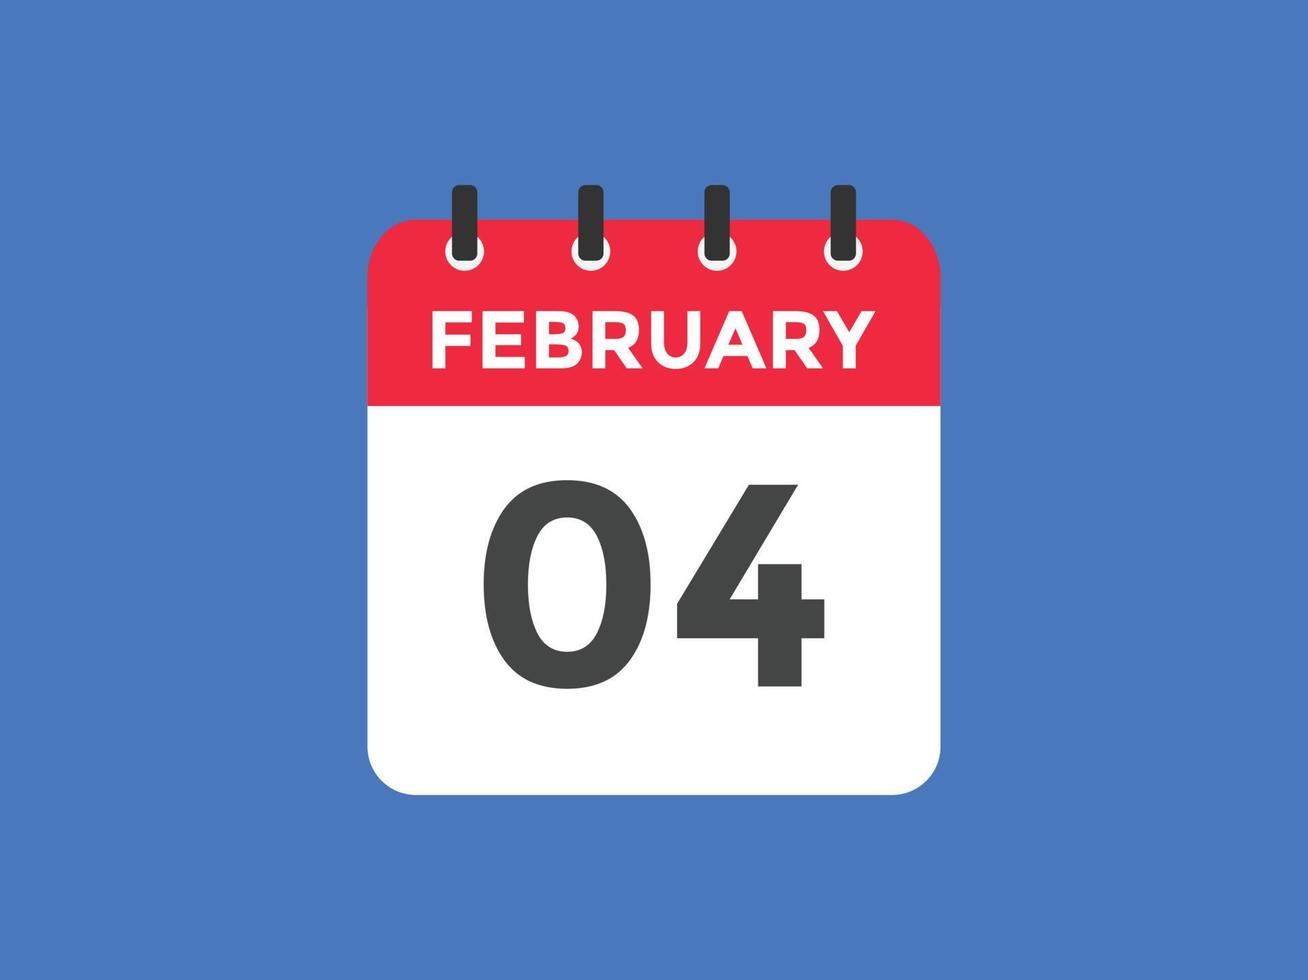 Recordatorio del calendario del 4 de febrero. Plantilla de icono de calendario diario del 4 de febrero. plantilla de diseño de icono de calendario 4 de febrero. ilustración vectorial vector